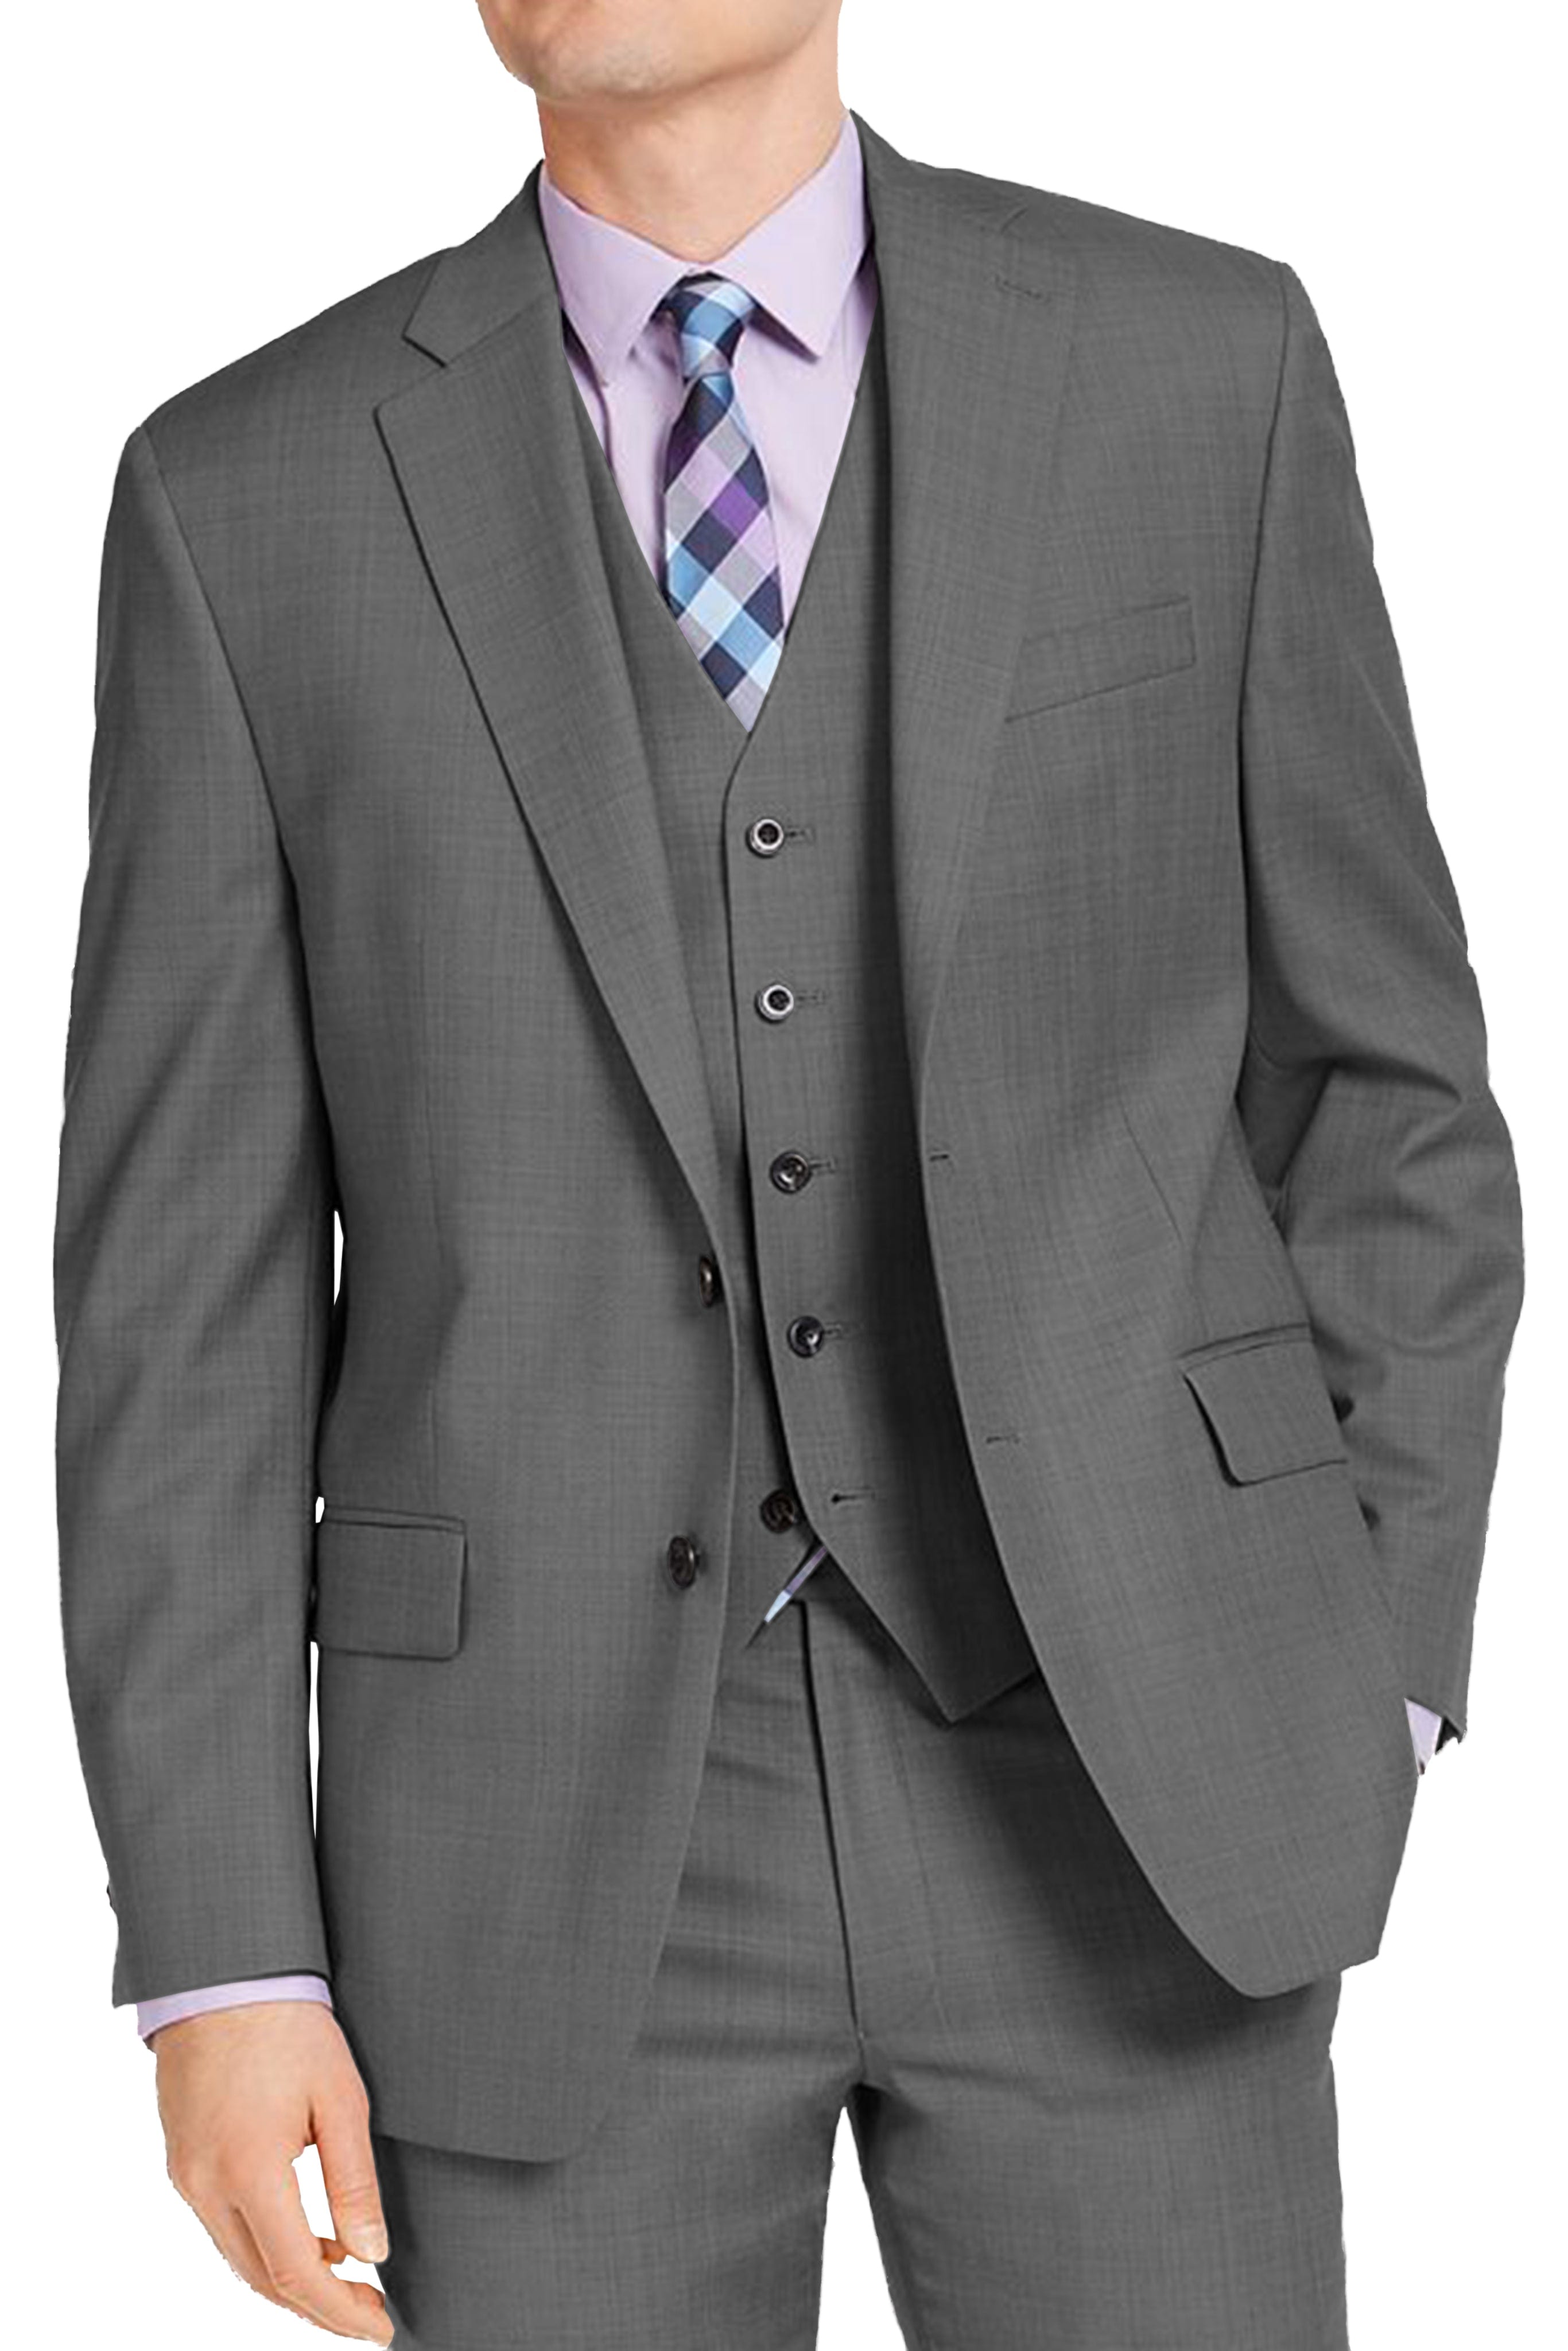 aesido Men's Suit 3 Piece Notch Lapel Jacket For Wedding (Blazer+Vest+pants）